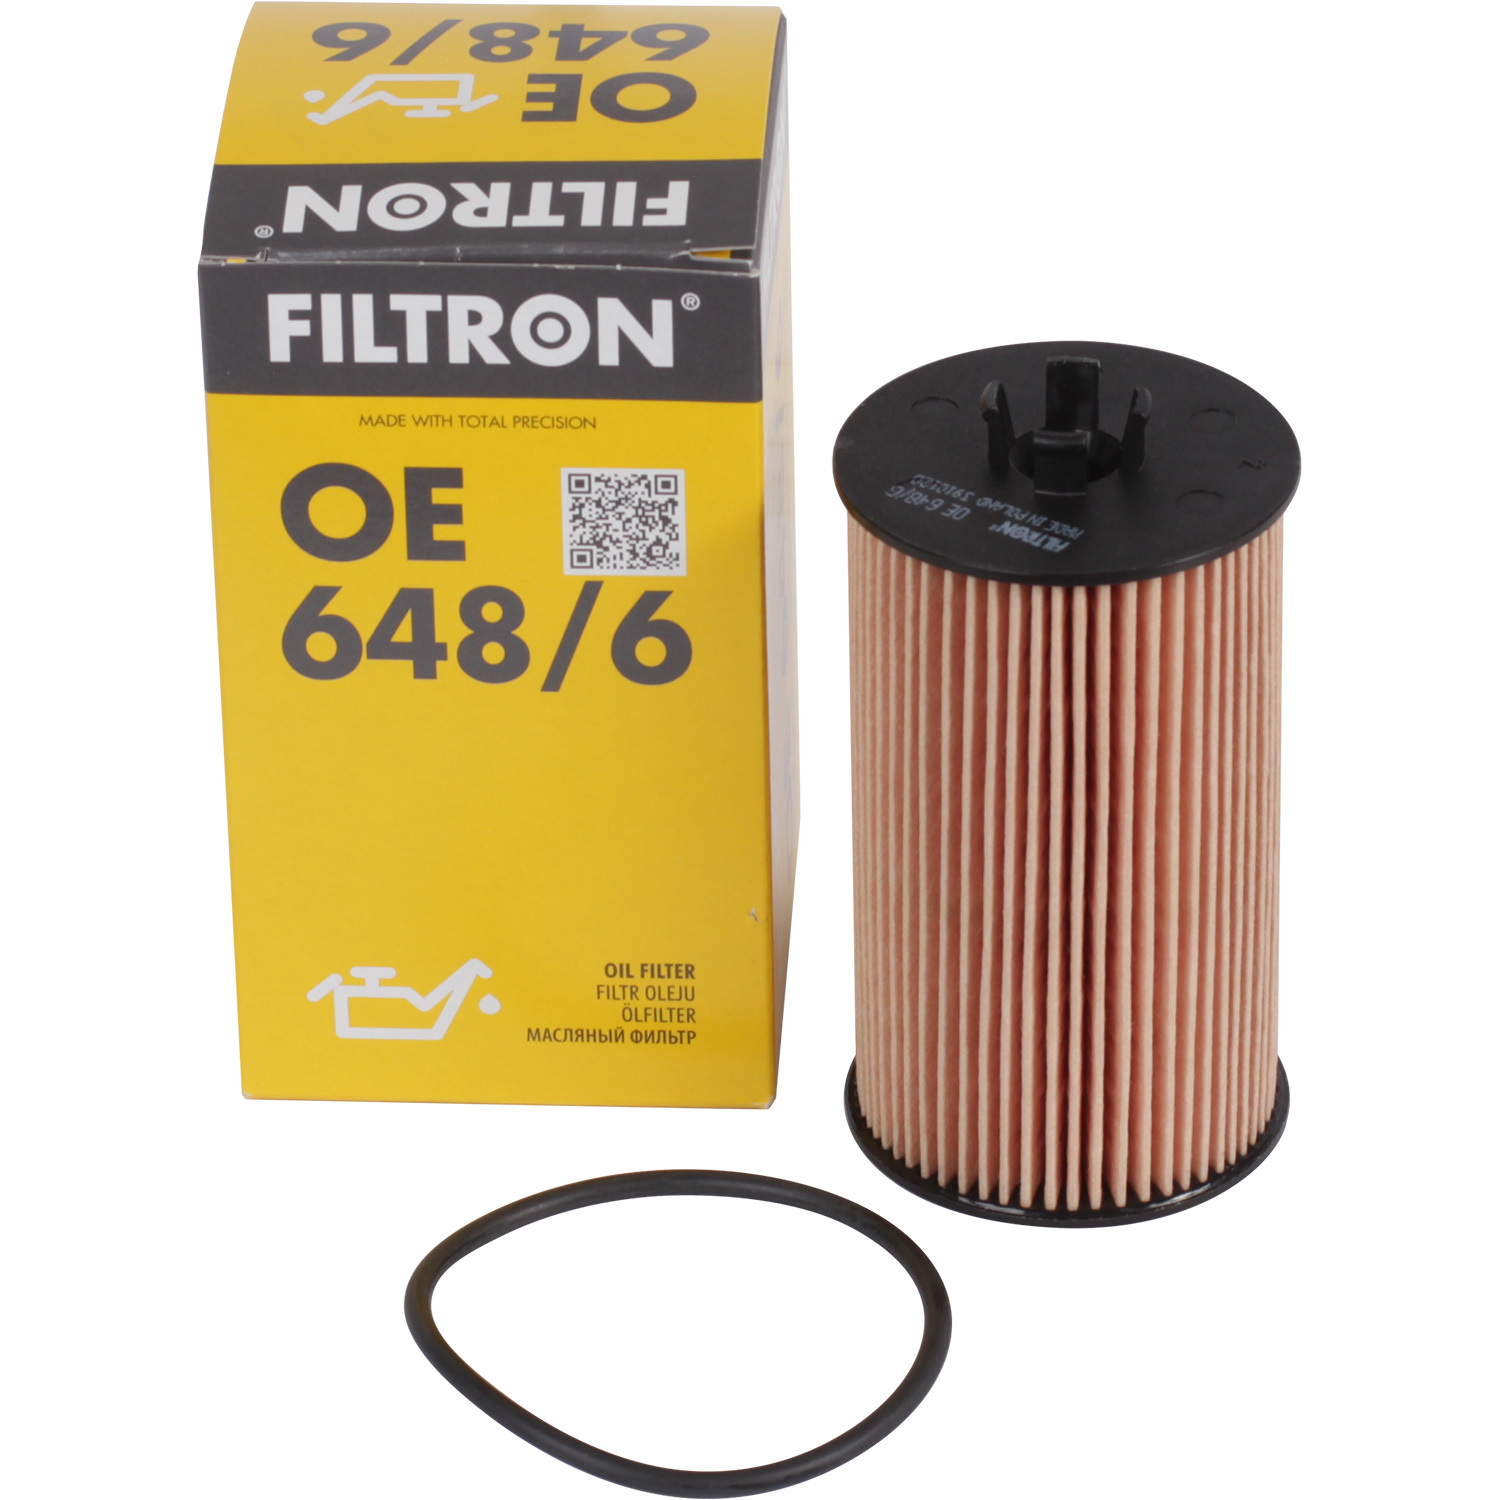 Фильтры Filtron Фильтр масляный Filtron OE6486 фильтры filtron фильтр масляный filtron op641